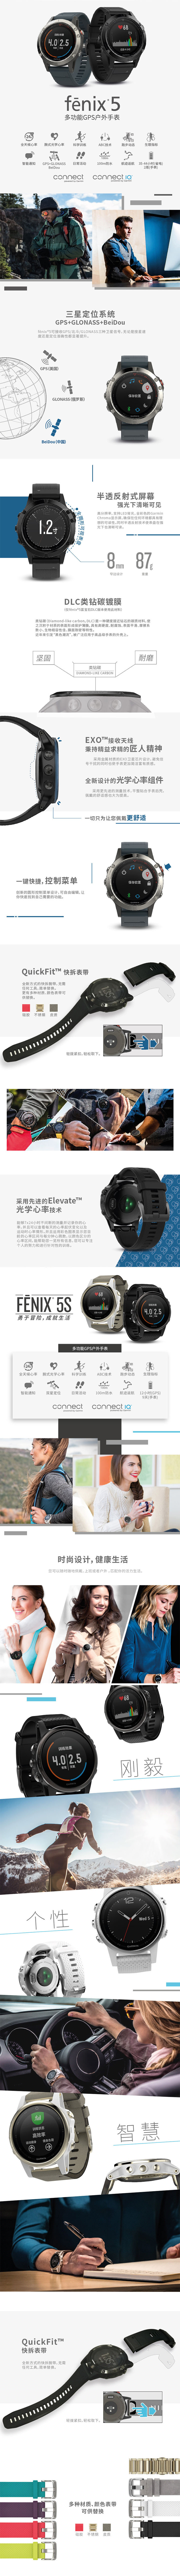 Garmin fenix 5户外手表 免费试用,评测